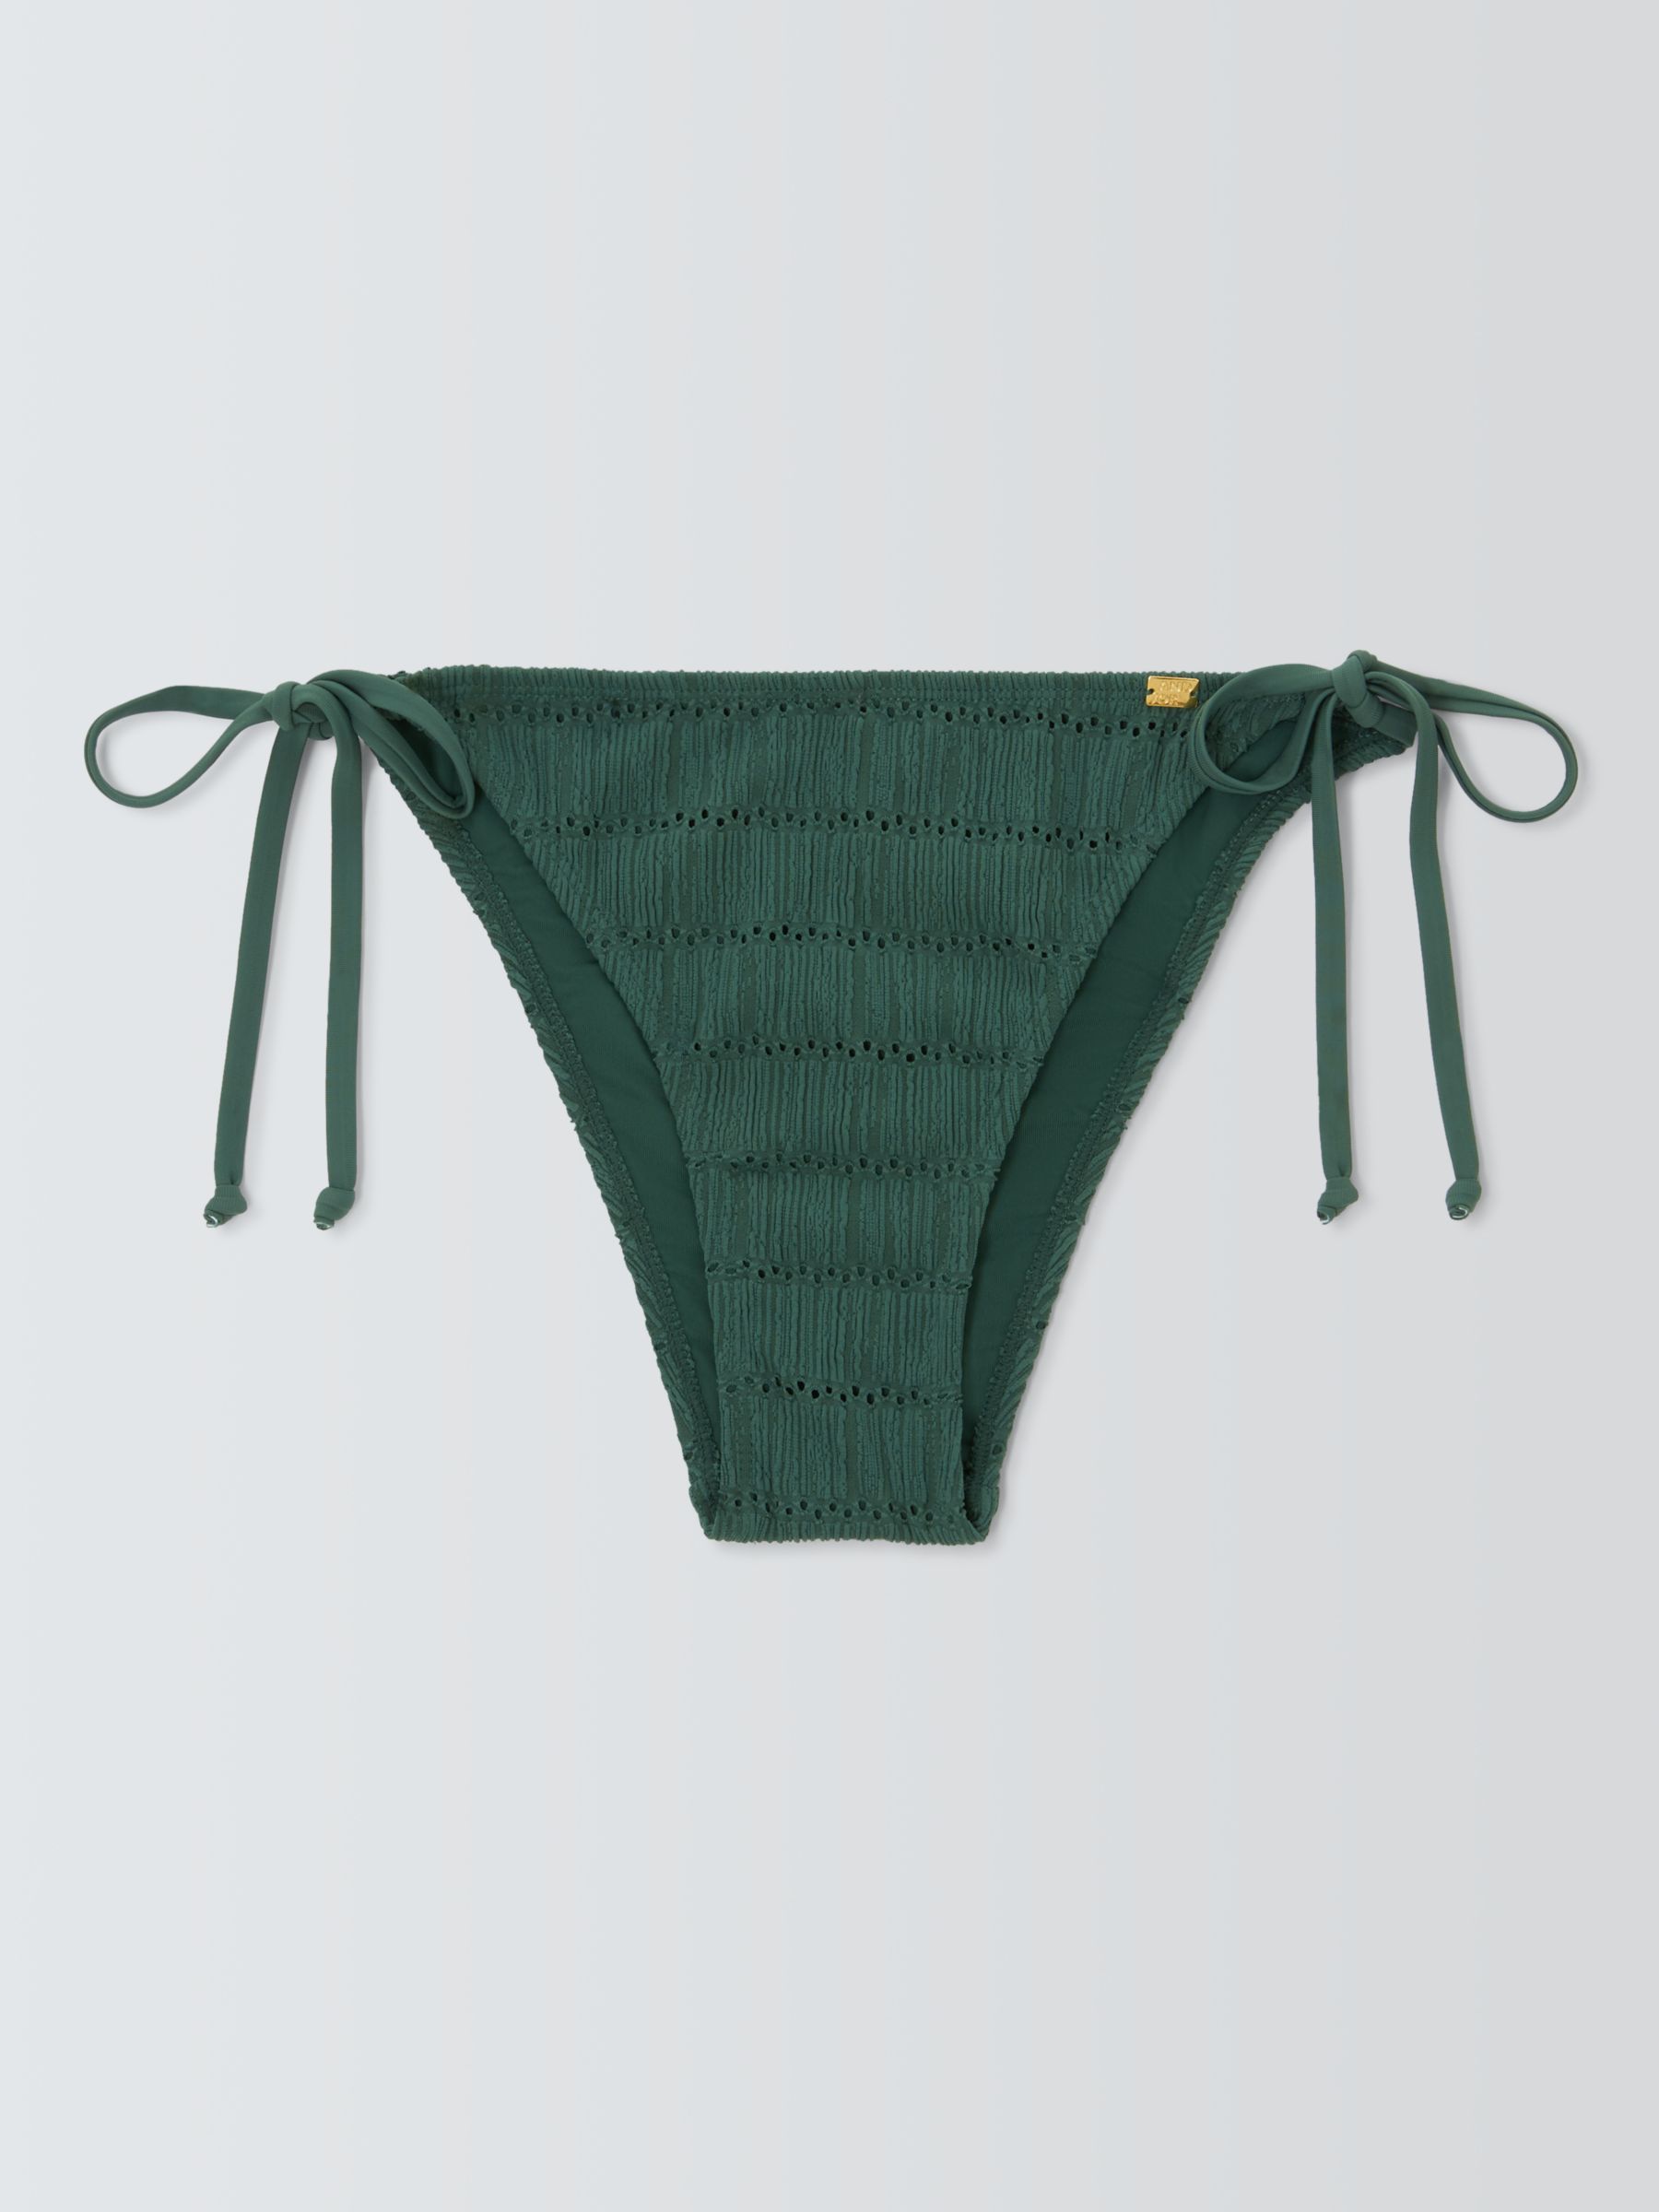 AND/OR Bali Crochet Bikini Bottoms, Green, 18